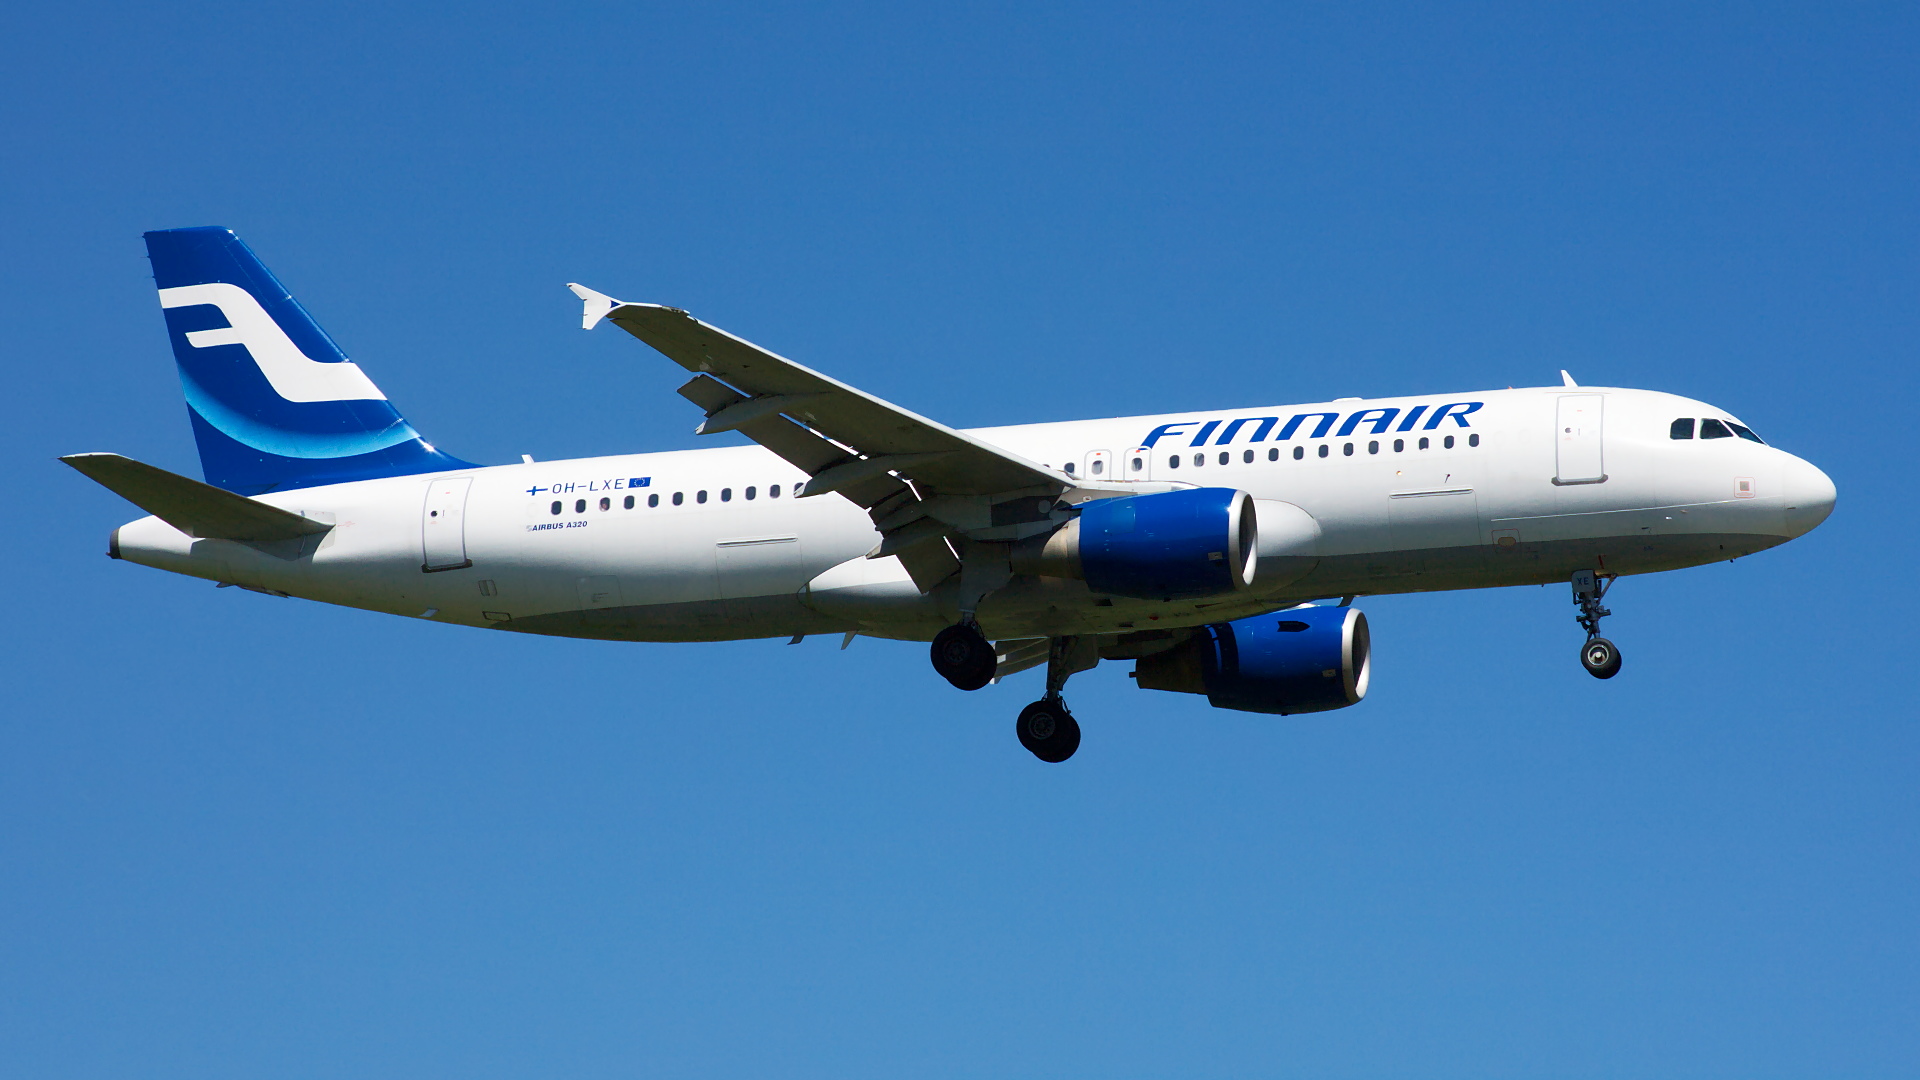 OH-LXE ✈ Finnair Airbus A320-214 @ London-Heathrow